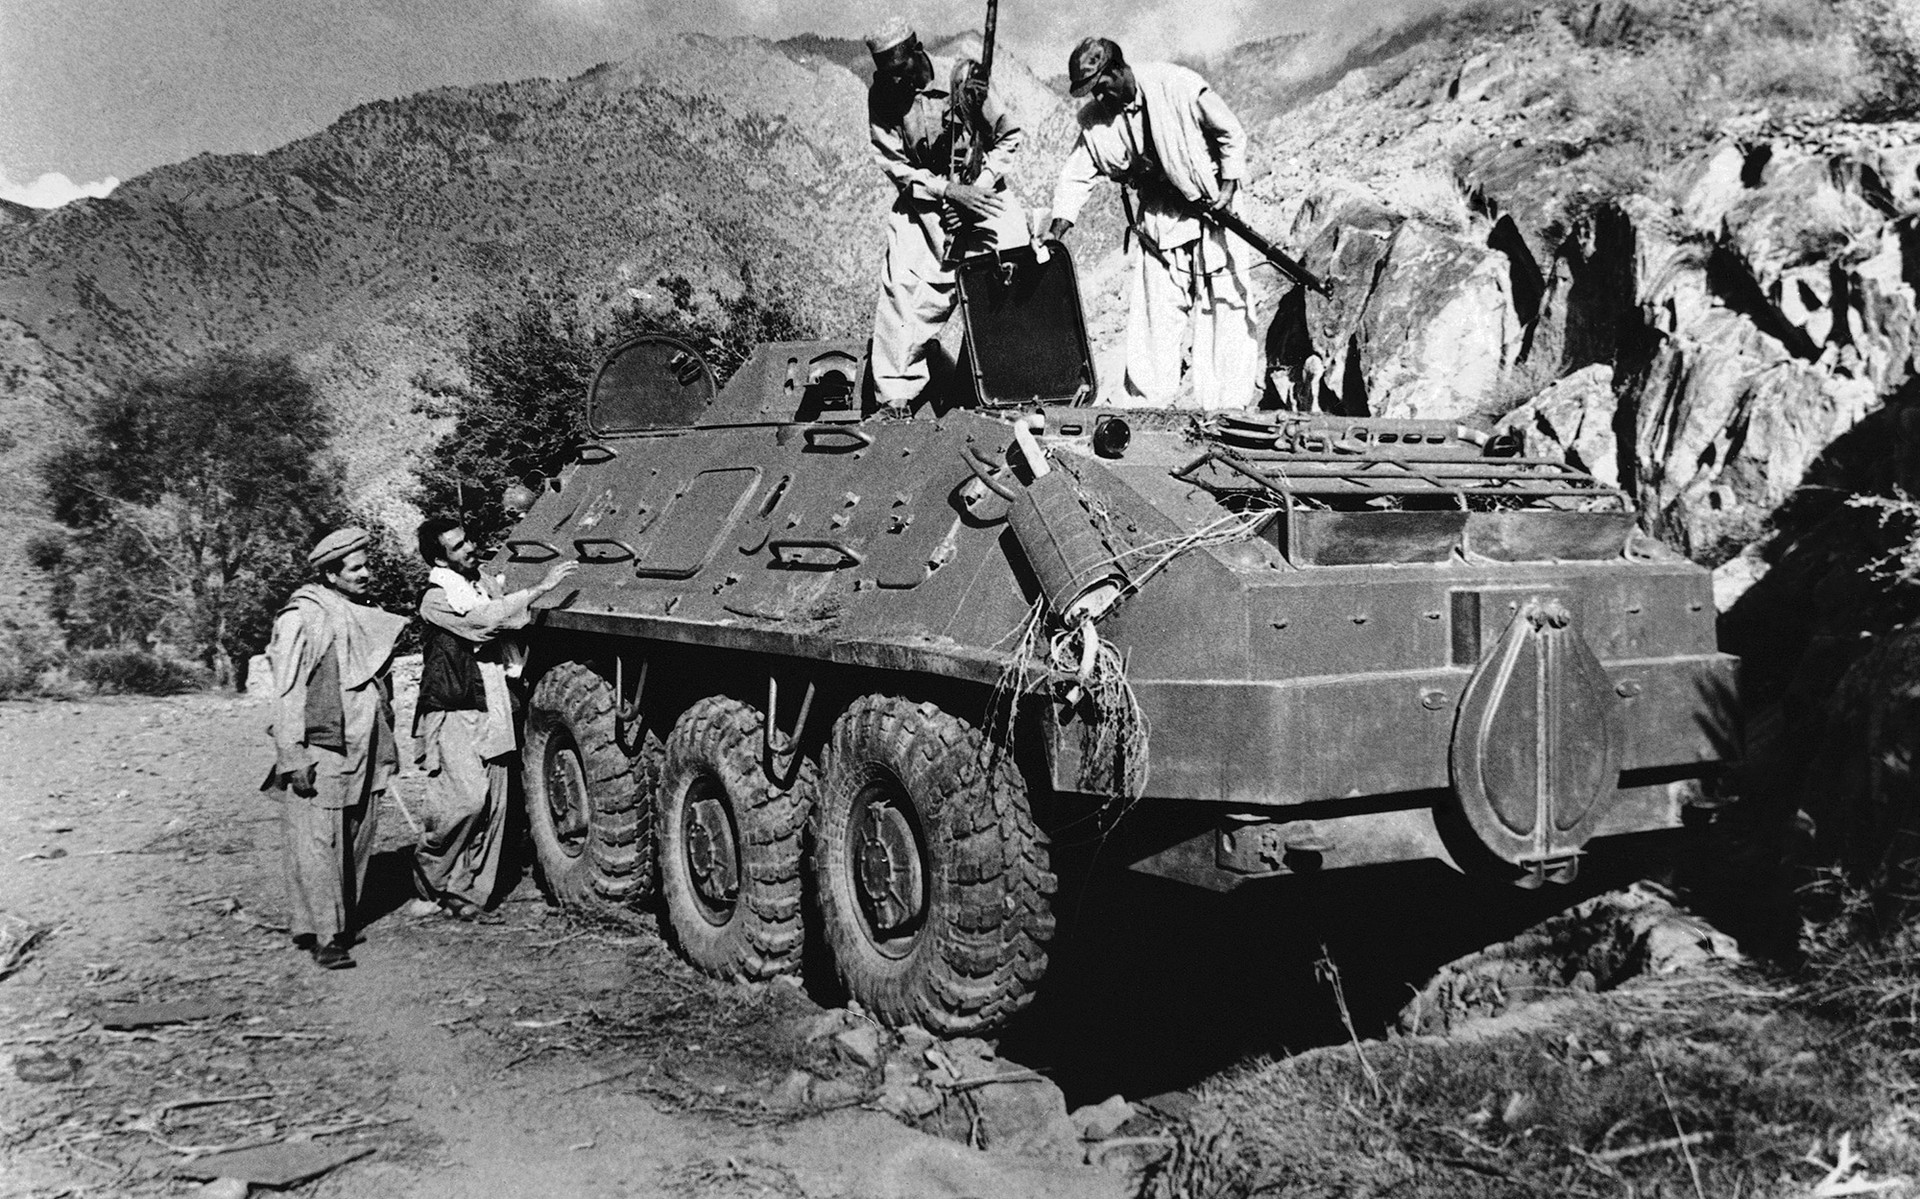 Kelompok mujahidin memeriksa tank Soviet yang direbut dalam pertempuran dengan pasukan pemerintah Kabul pada September 1979 di dekat Asmar, Afganistan, Kamis, 27 Desember 1979.